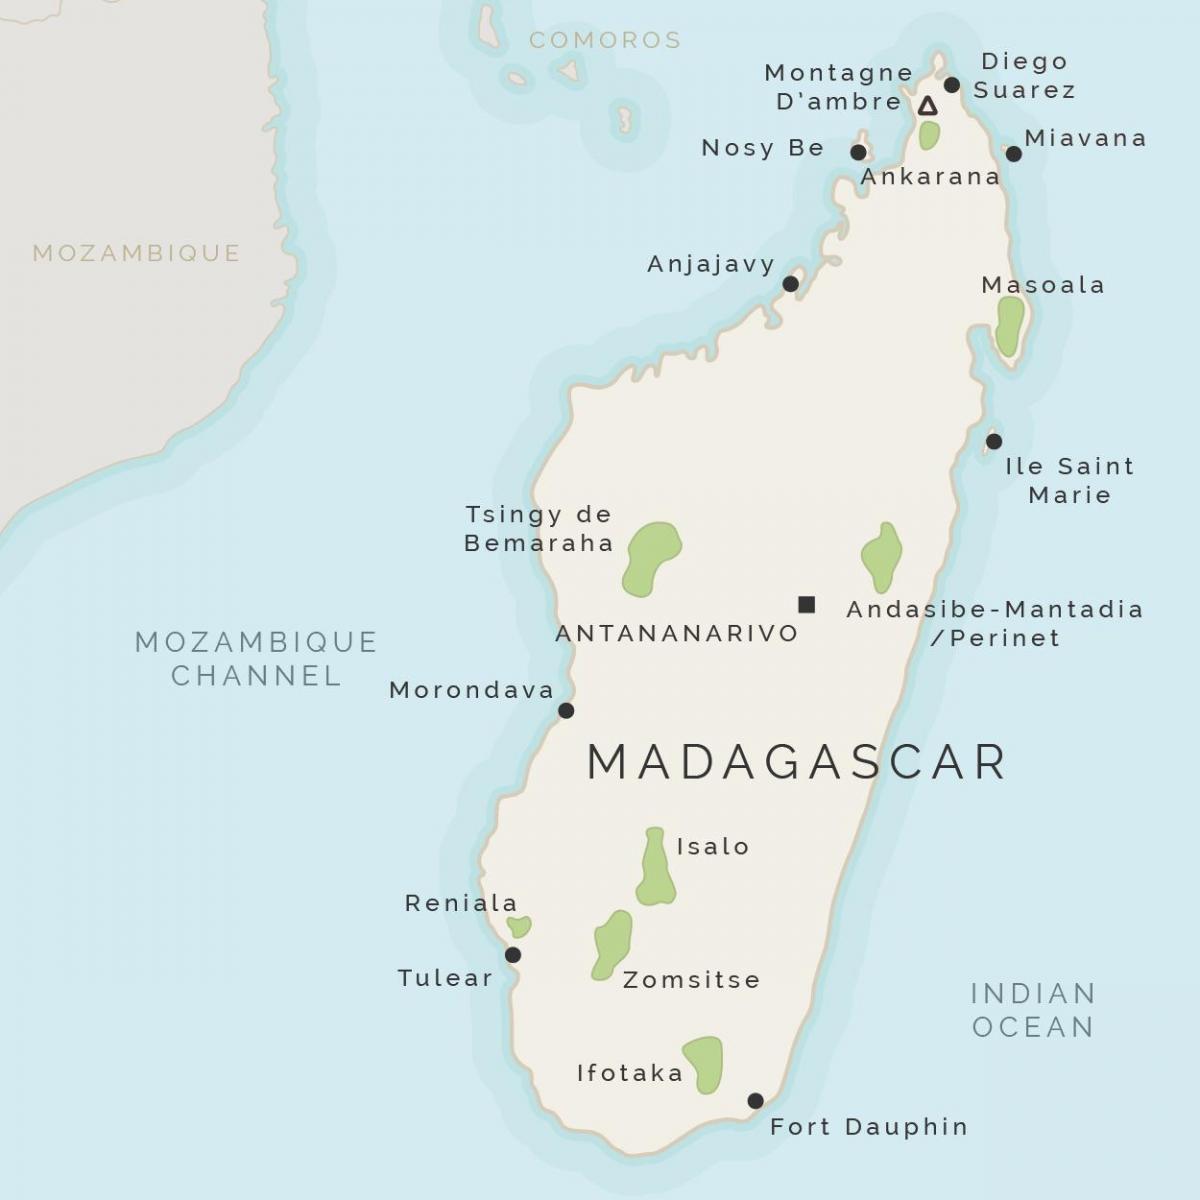 картата на Мадагаскар и съседните острови